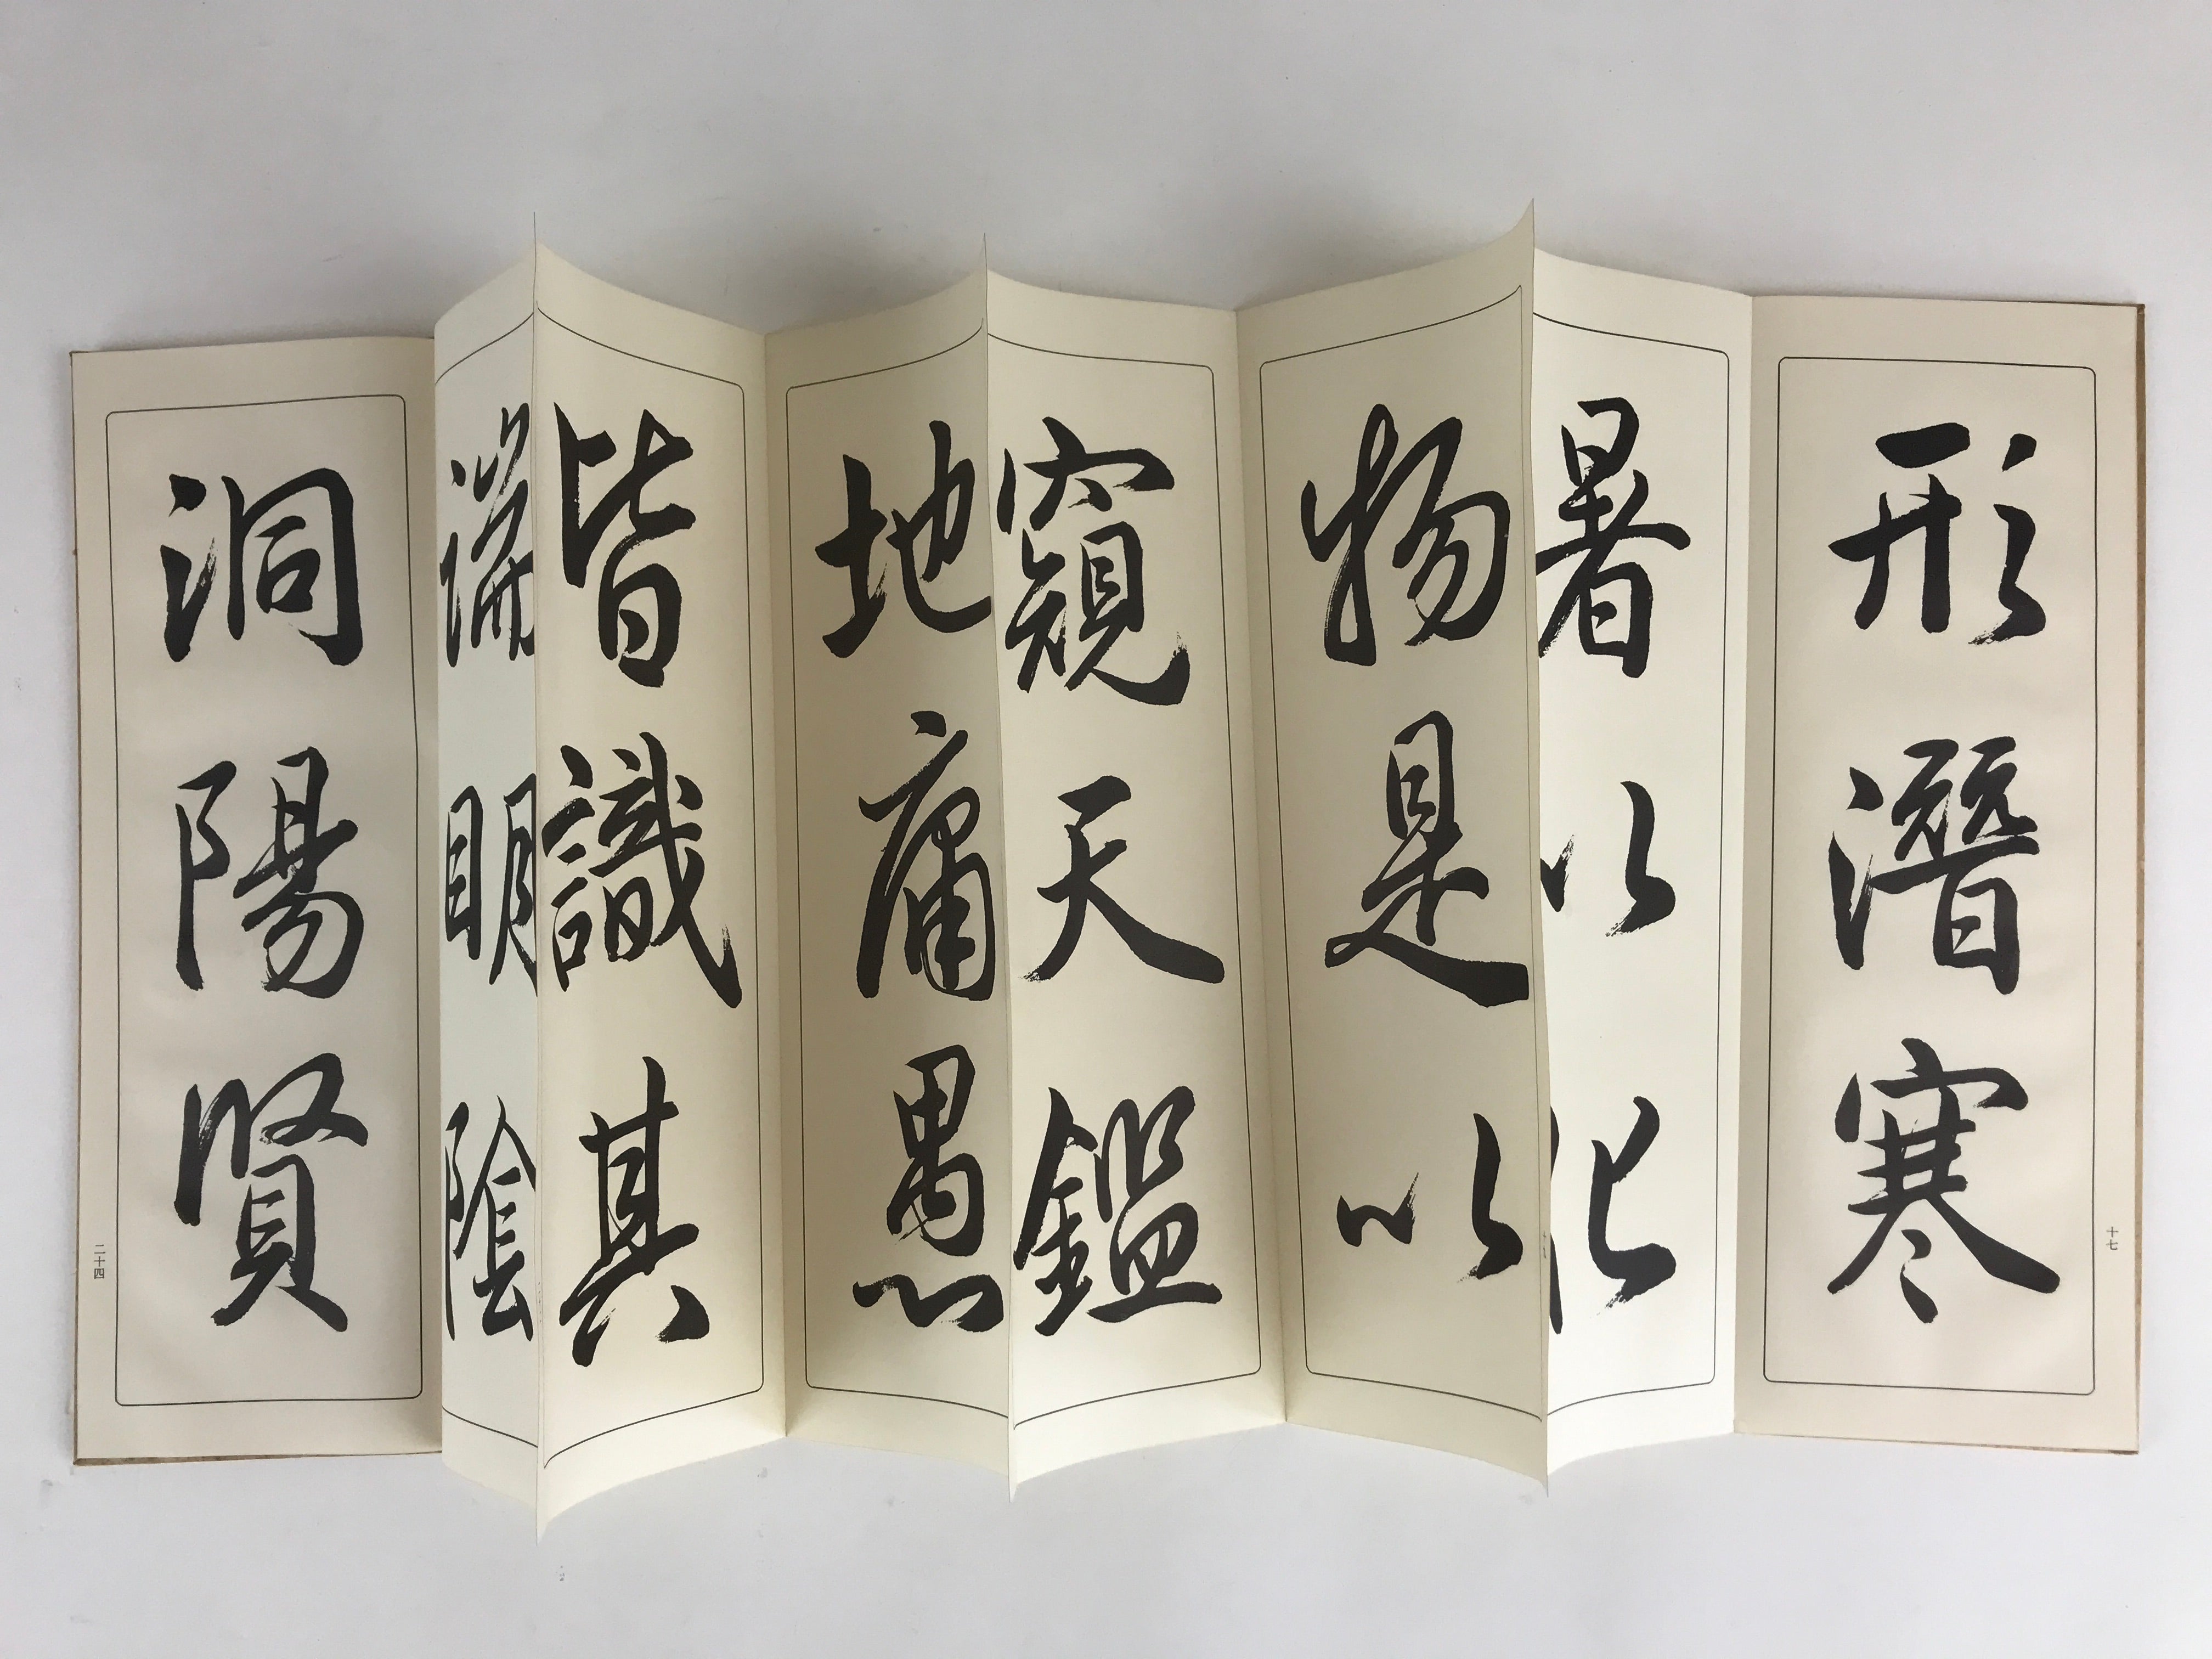 Japanese Calligraphy Reisho Rinsho Daitosanzoshogyojo Vtg Copy Book Tehon P337